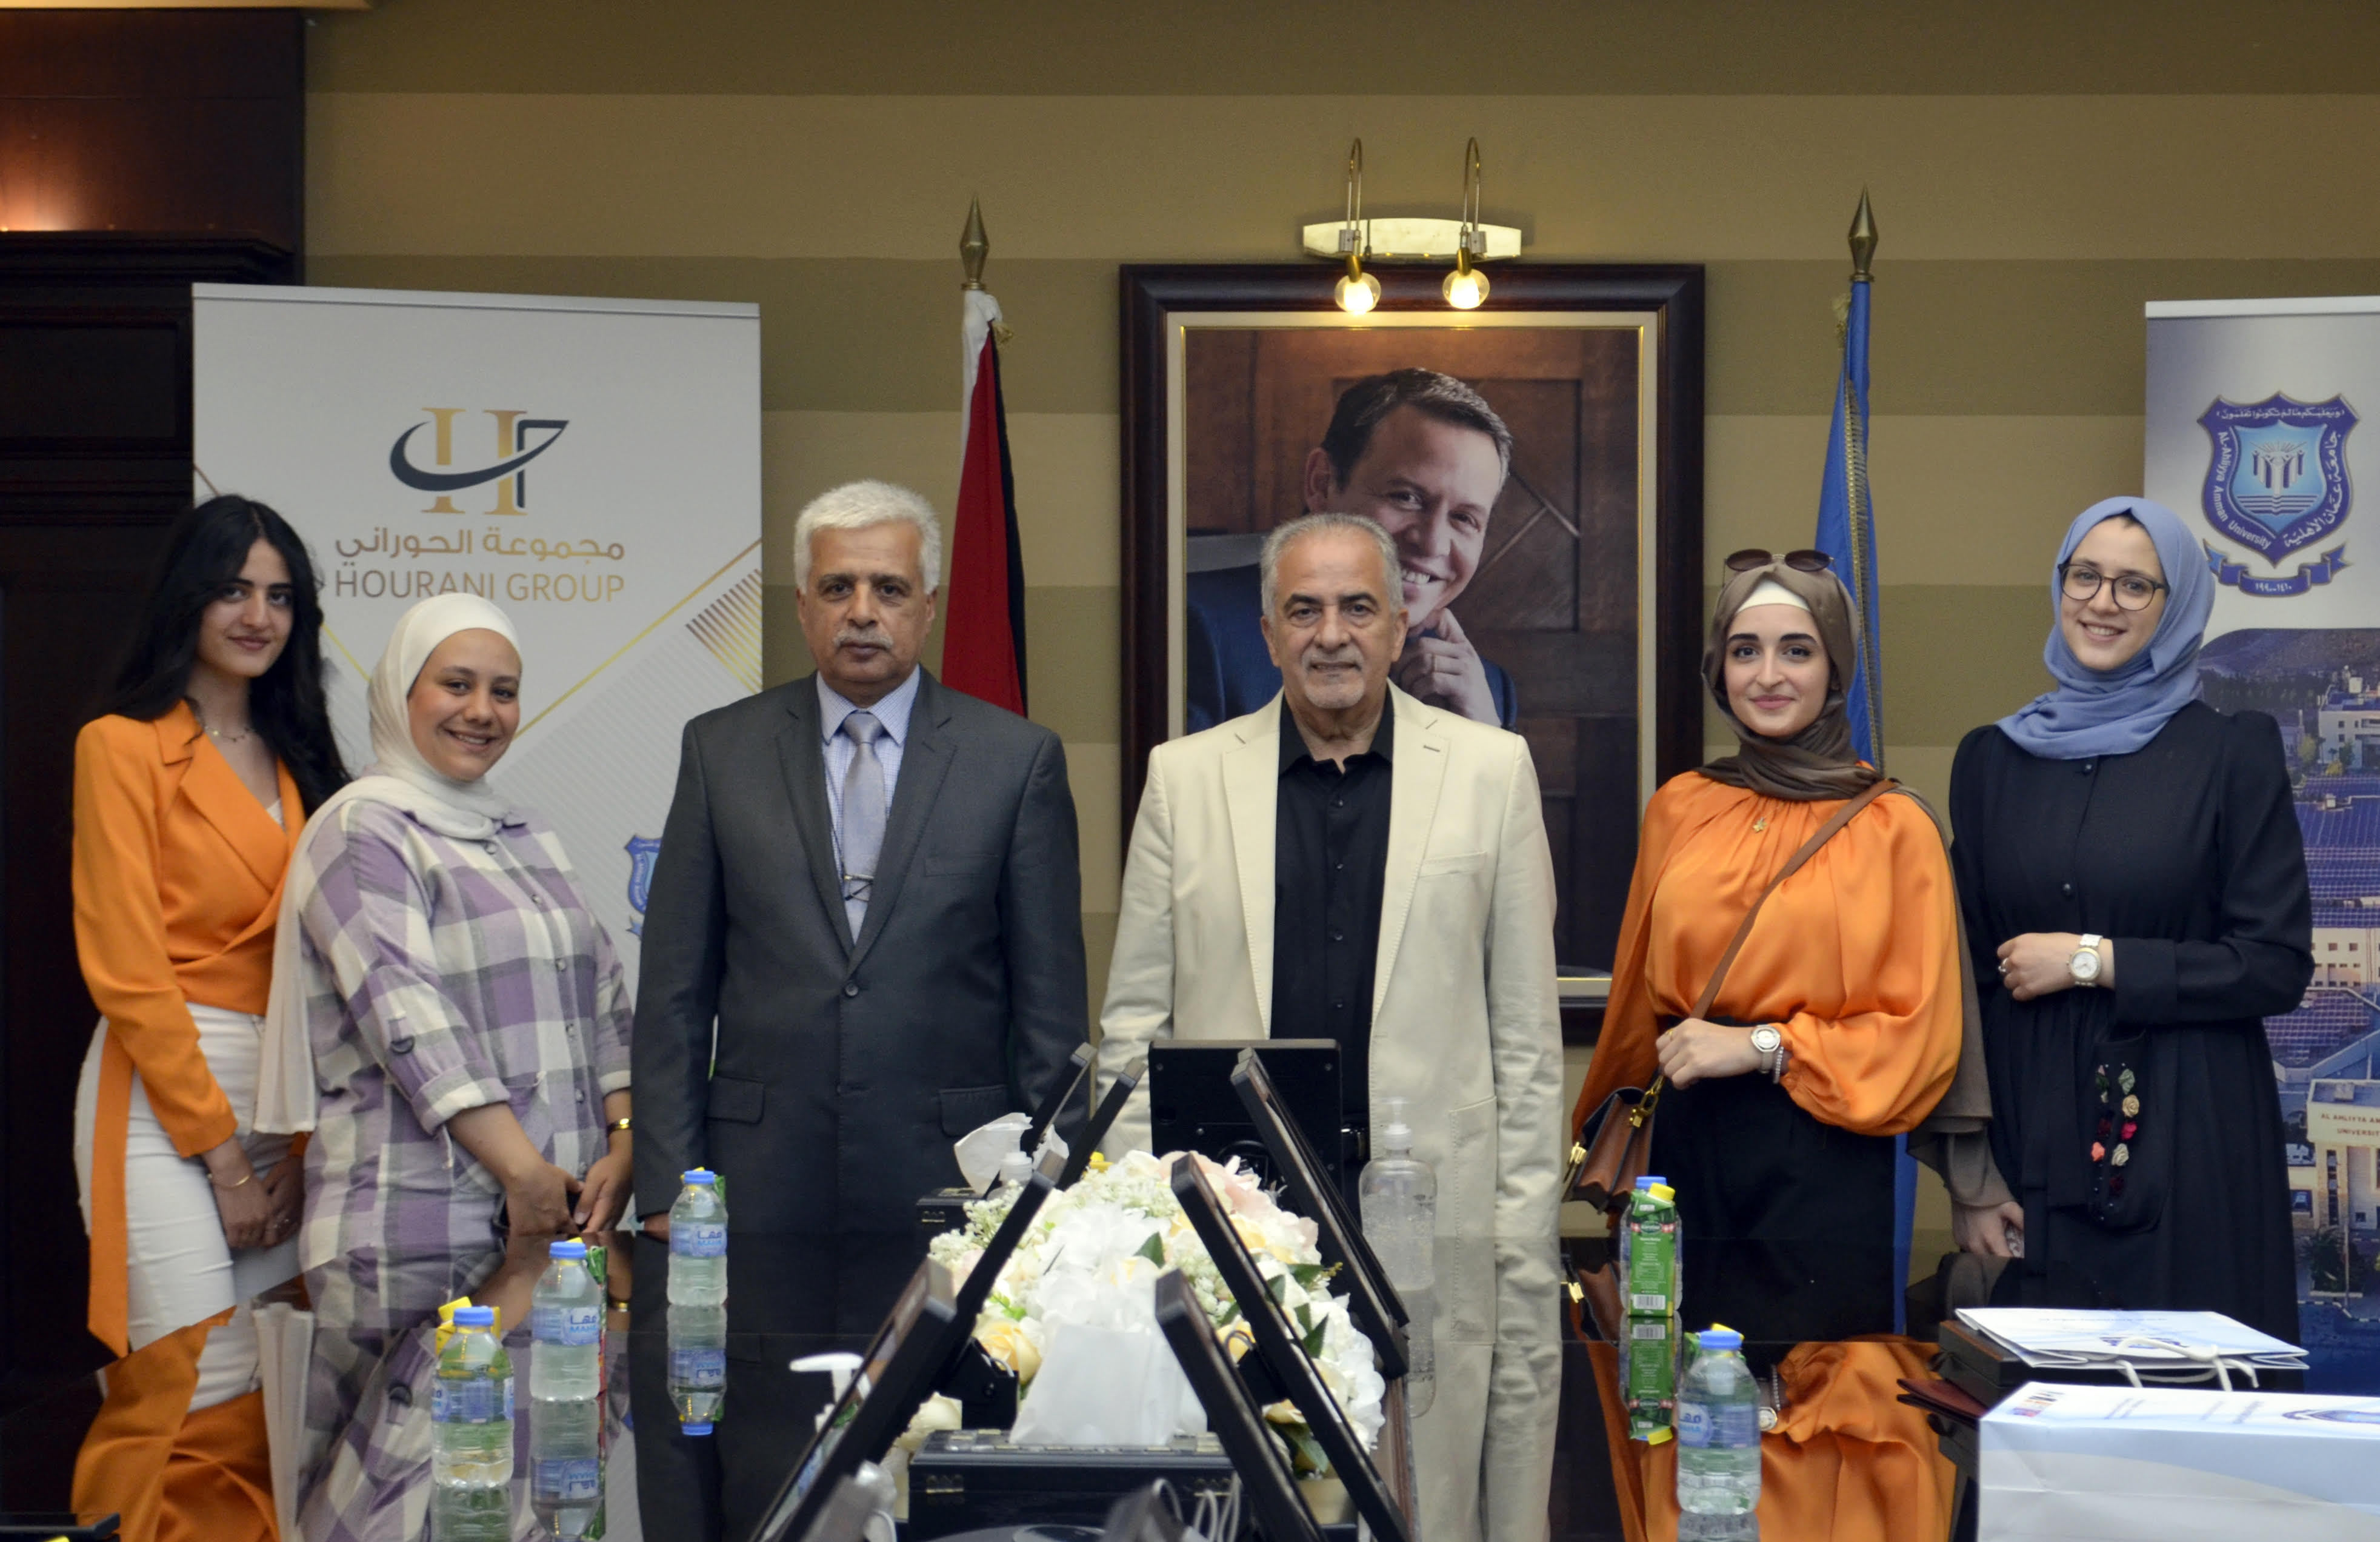 رئيس جامعة عمان الأهلية يكرم الطلبة الفائزين في جائزة الحوراني للفنون والتصميم - الدورة الثانية 2022